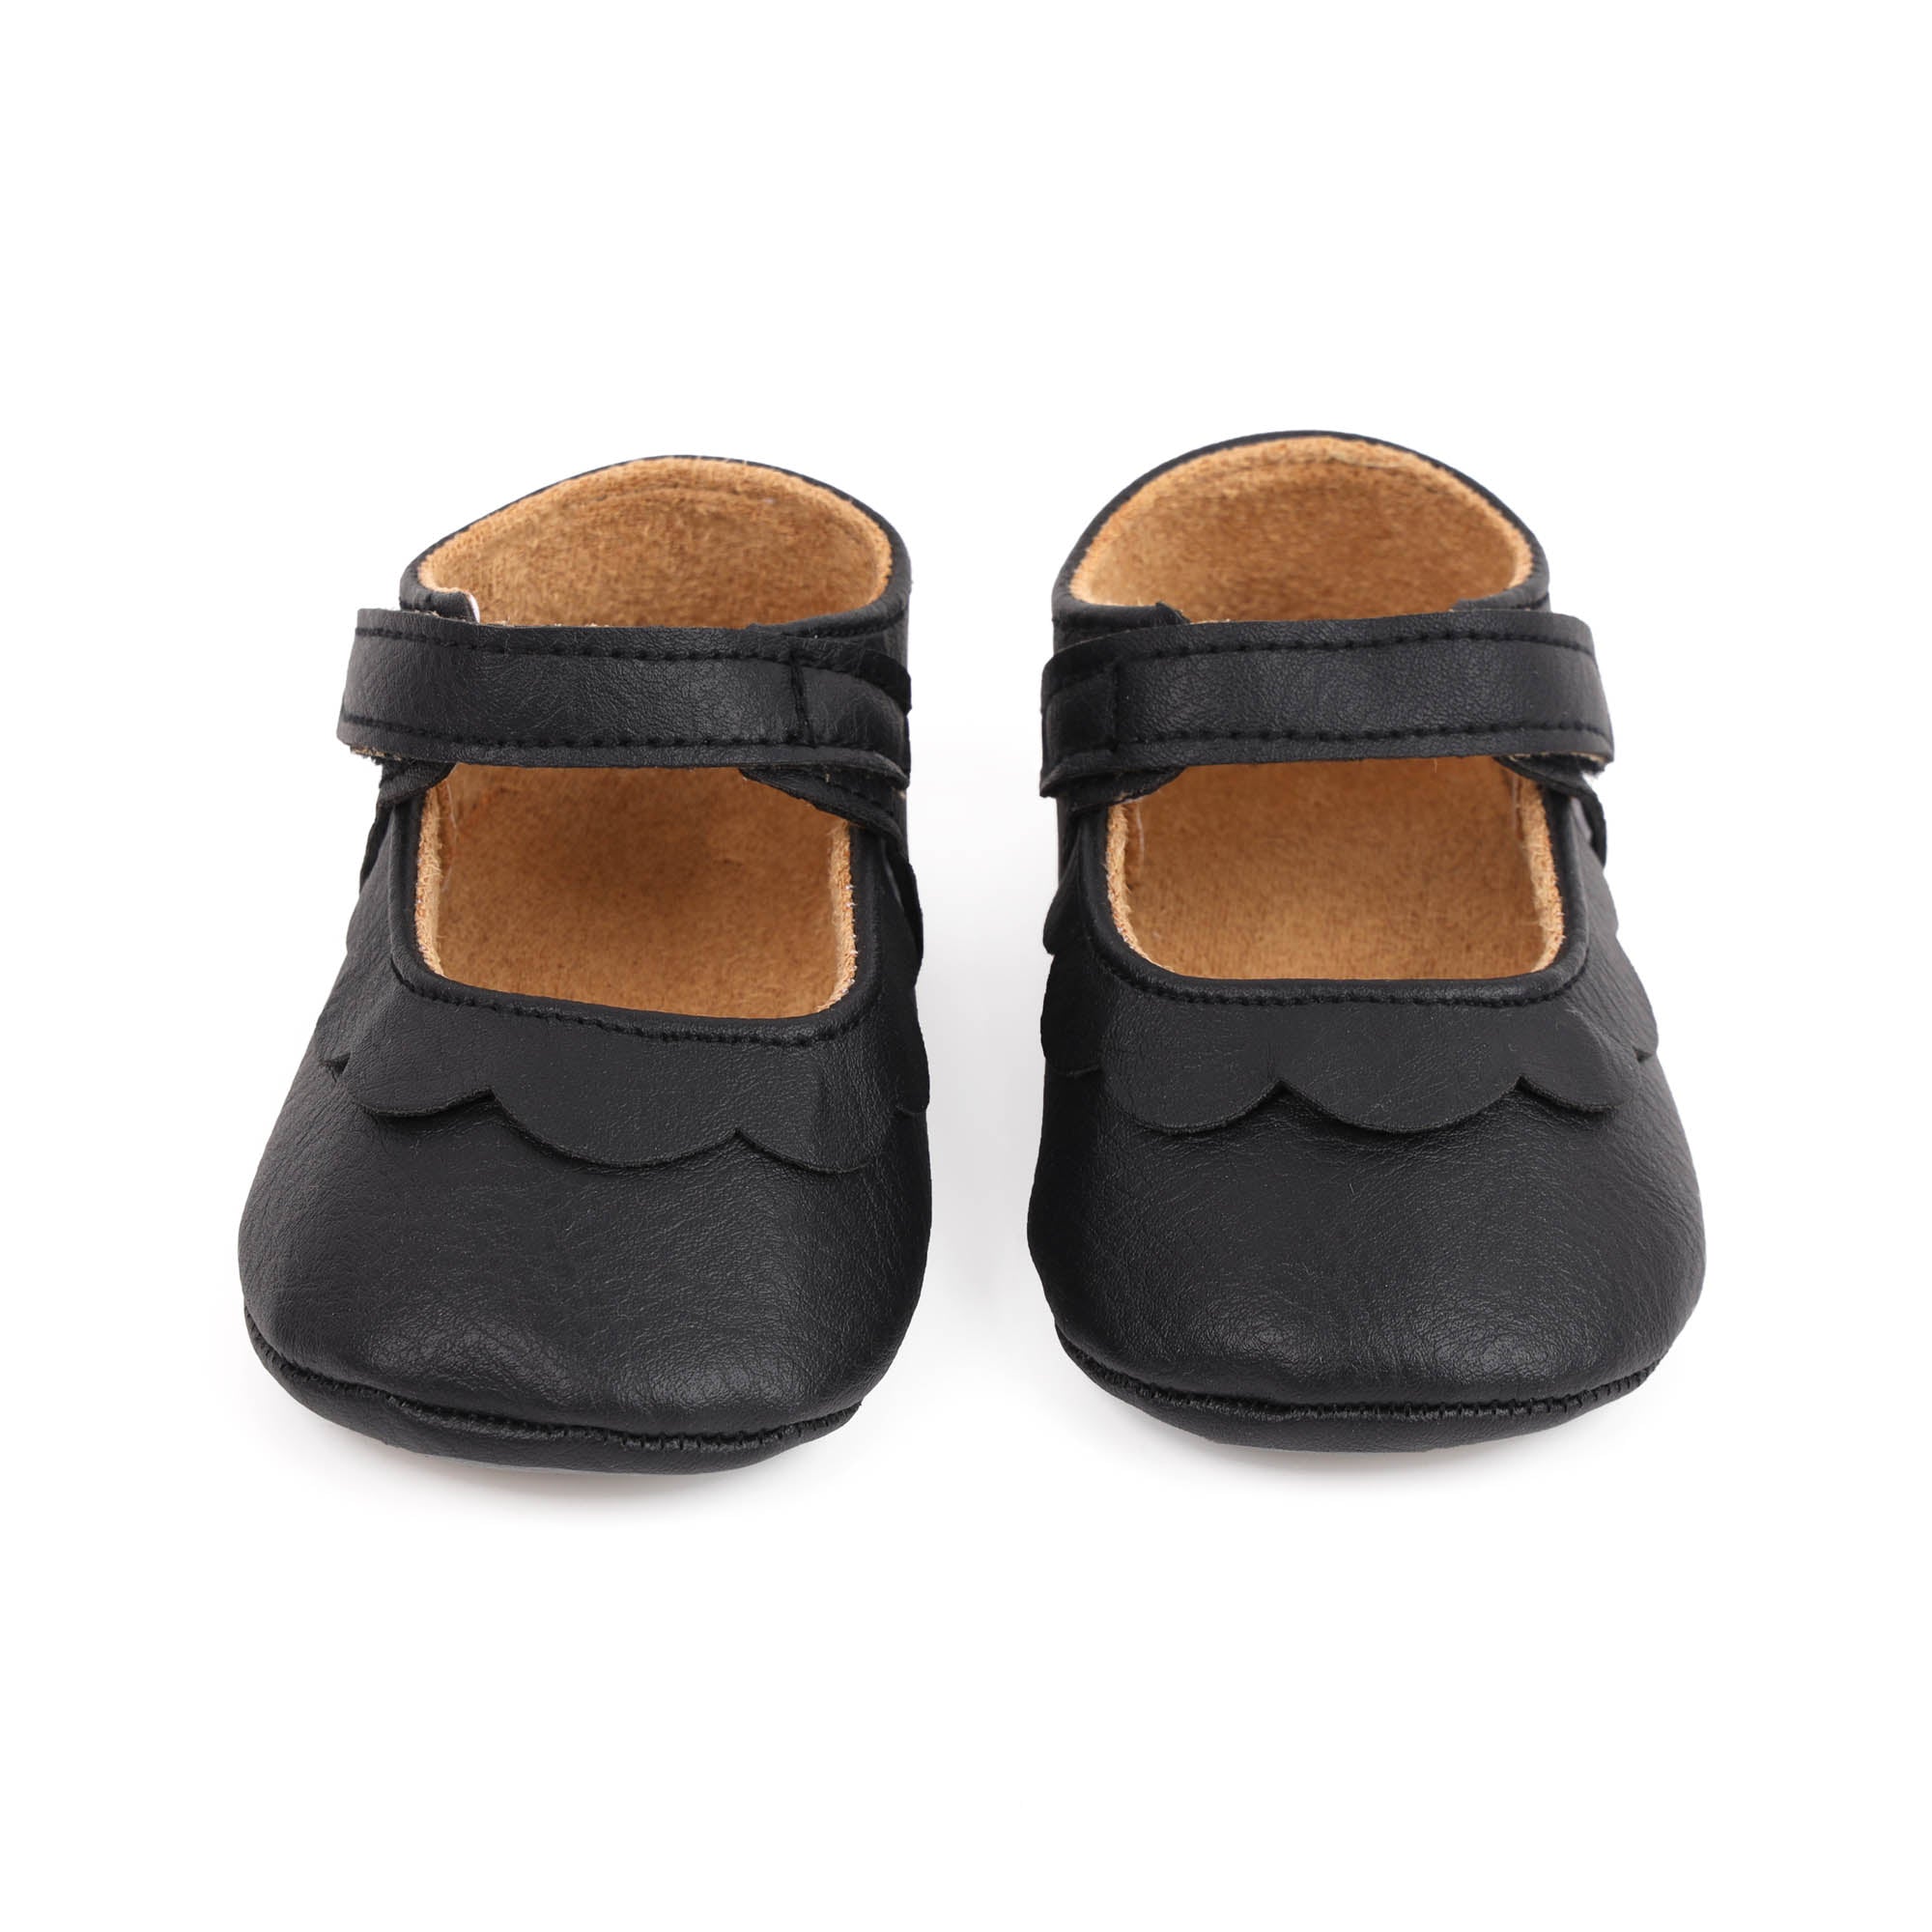 Kicks & Crawl- Ebony Ruffle Baby Shoes